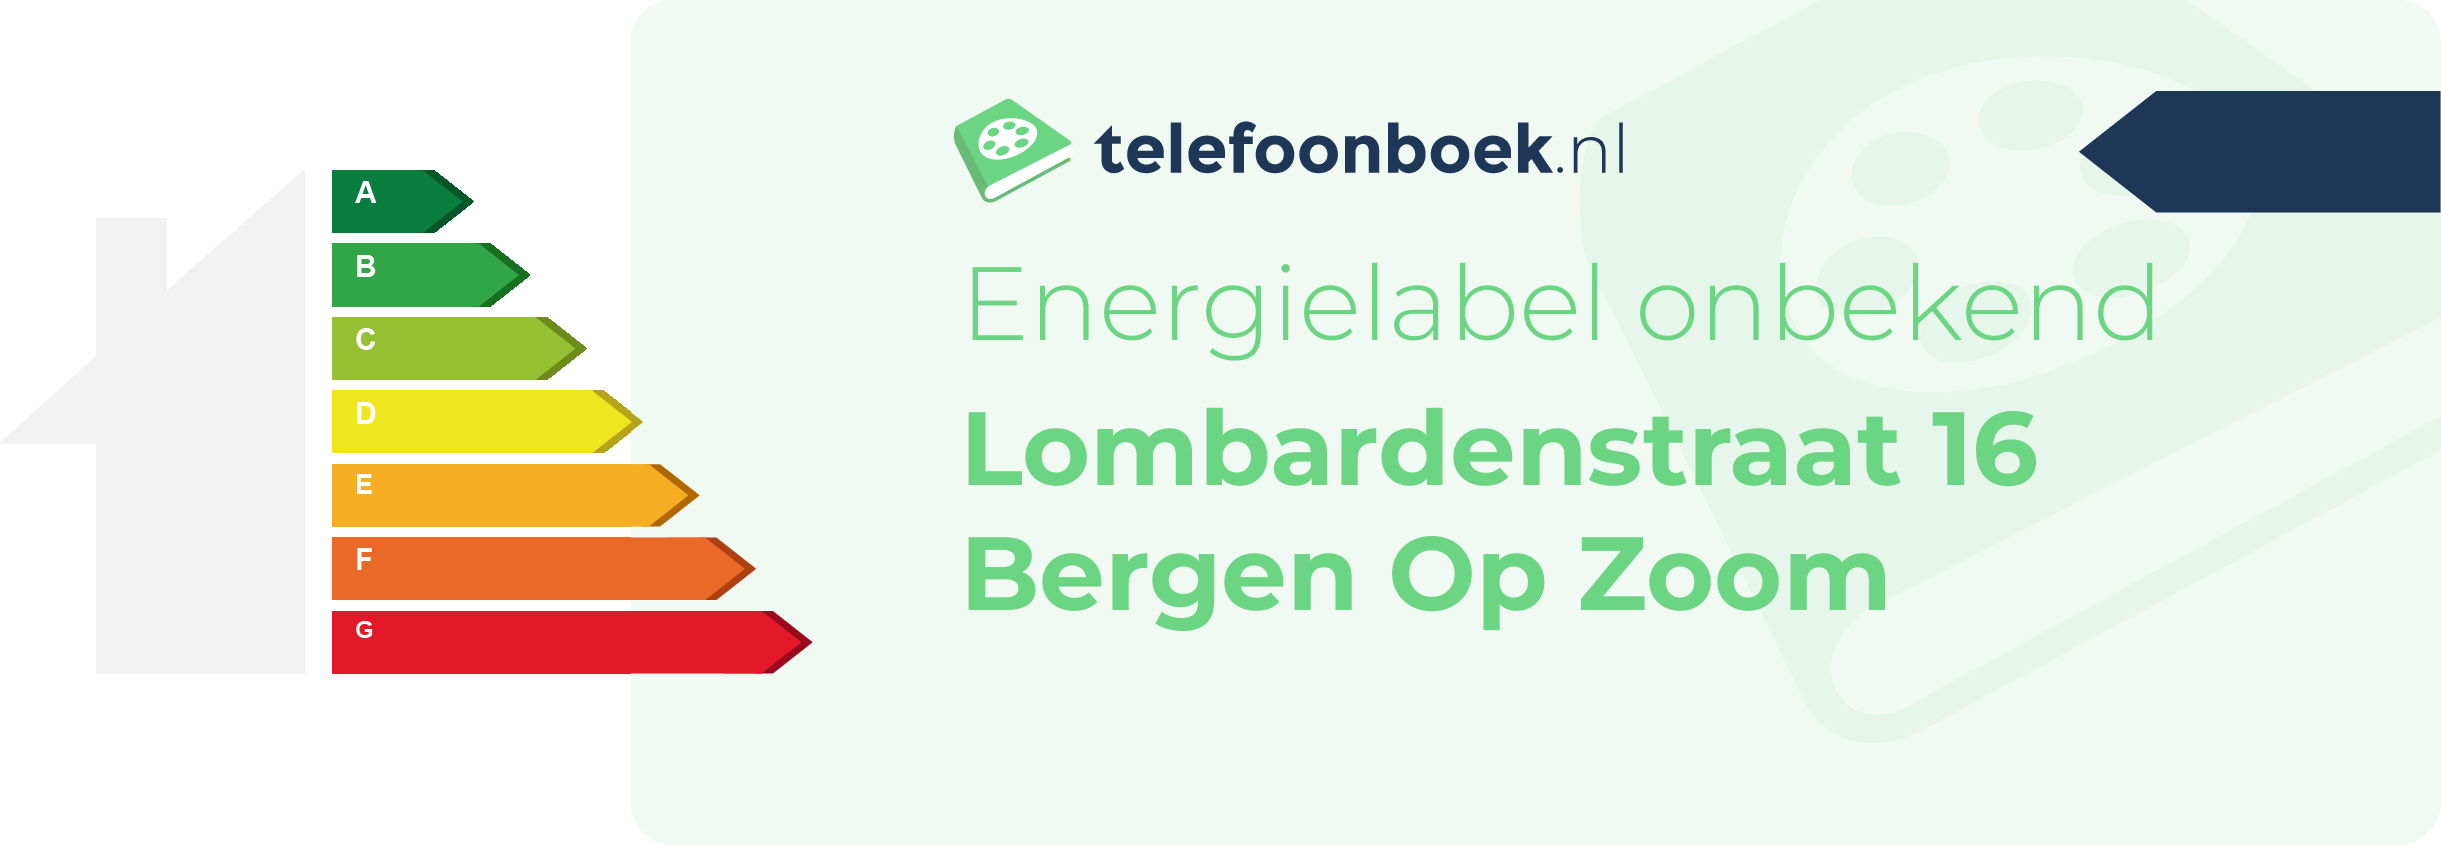 Energielabel Lombardenstraat 16 Bergen Op Zoom